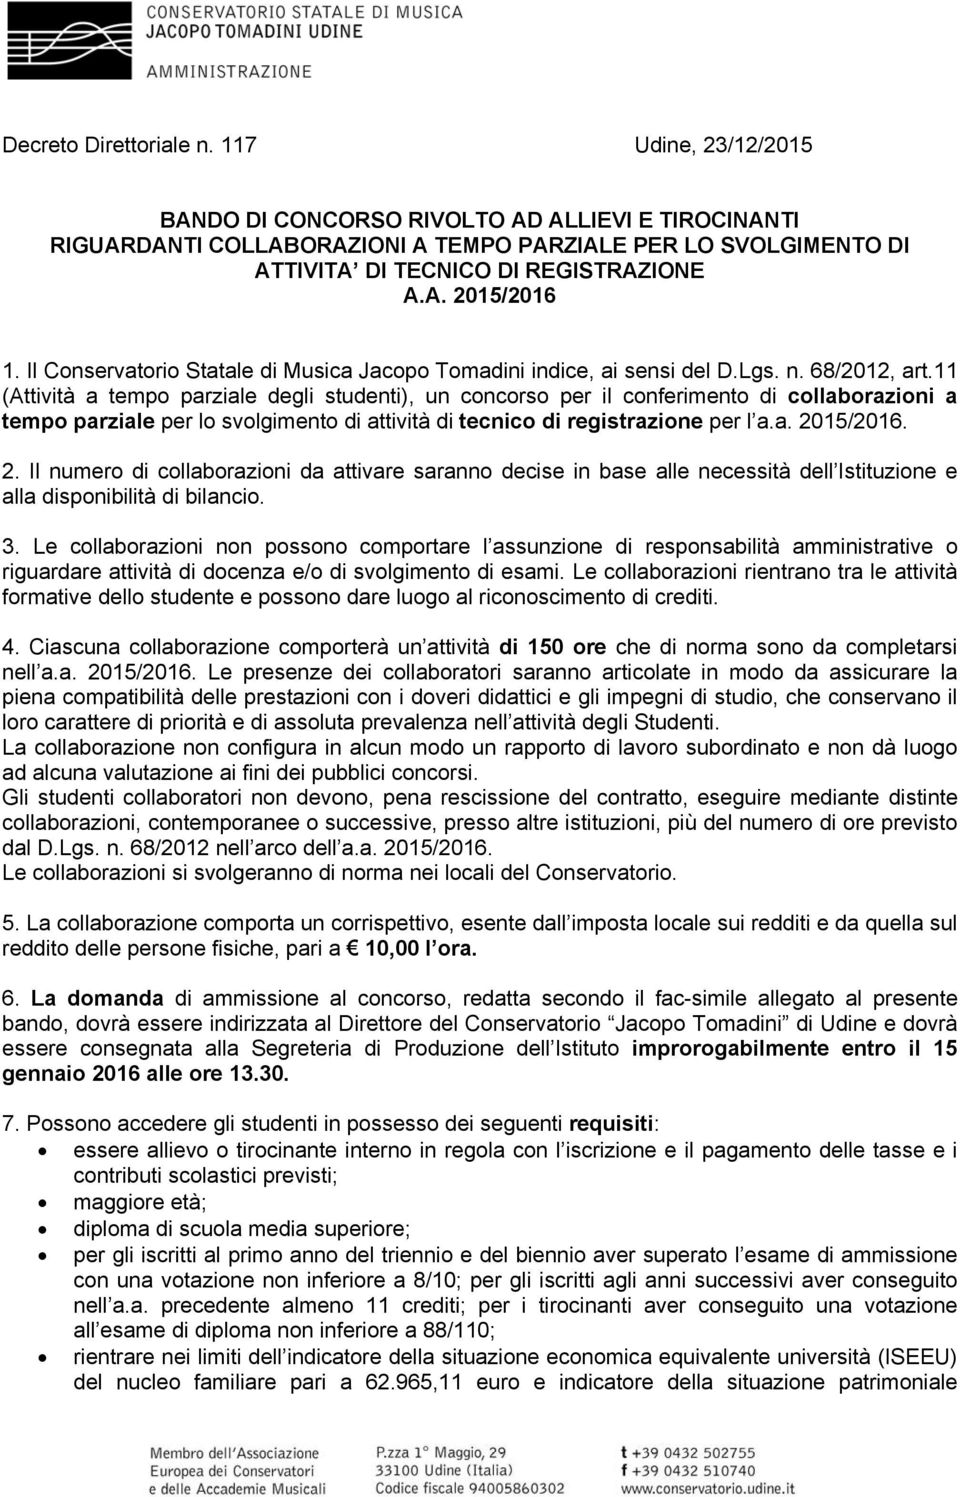 Il Conservatorio Statale di Musica Jacopo Tomadini indice, ai sensi del D.Lgs. n. 68/2012, art.